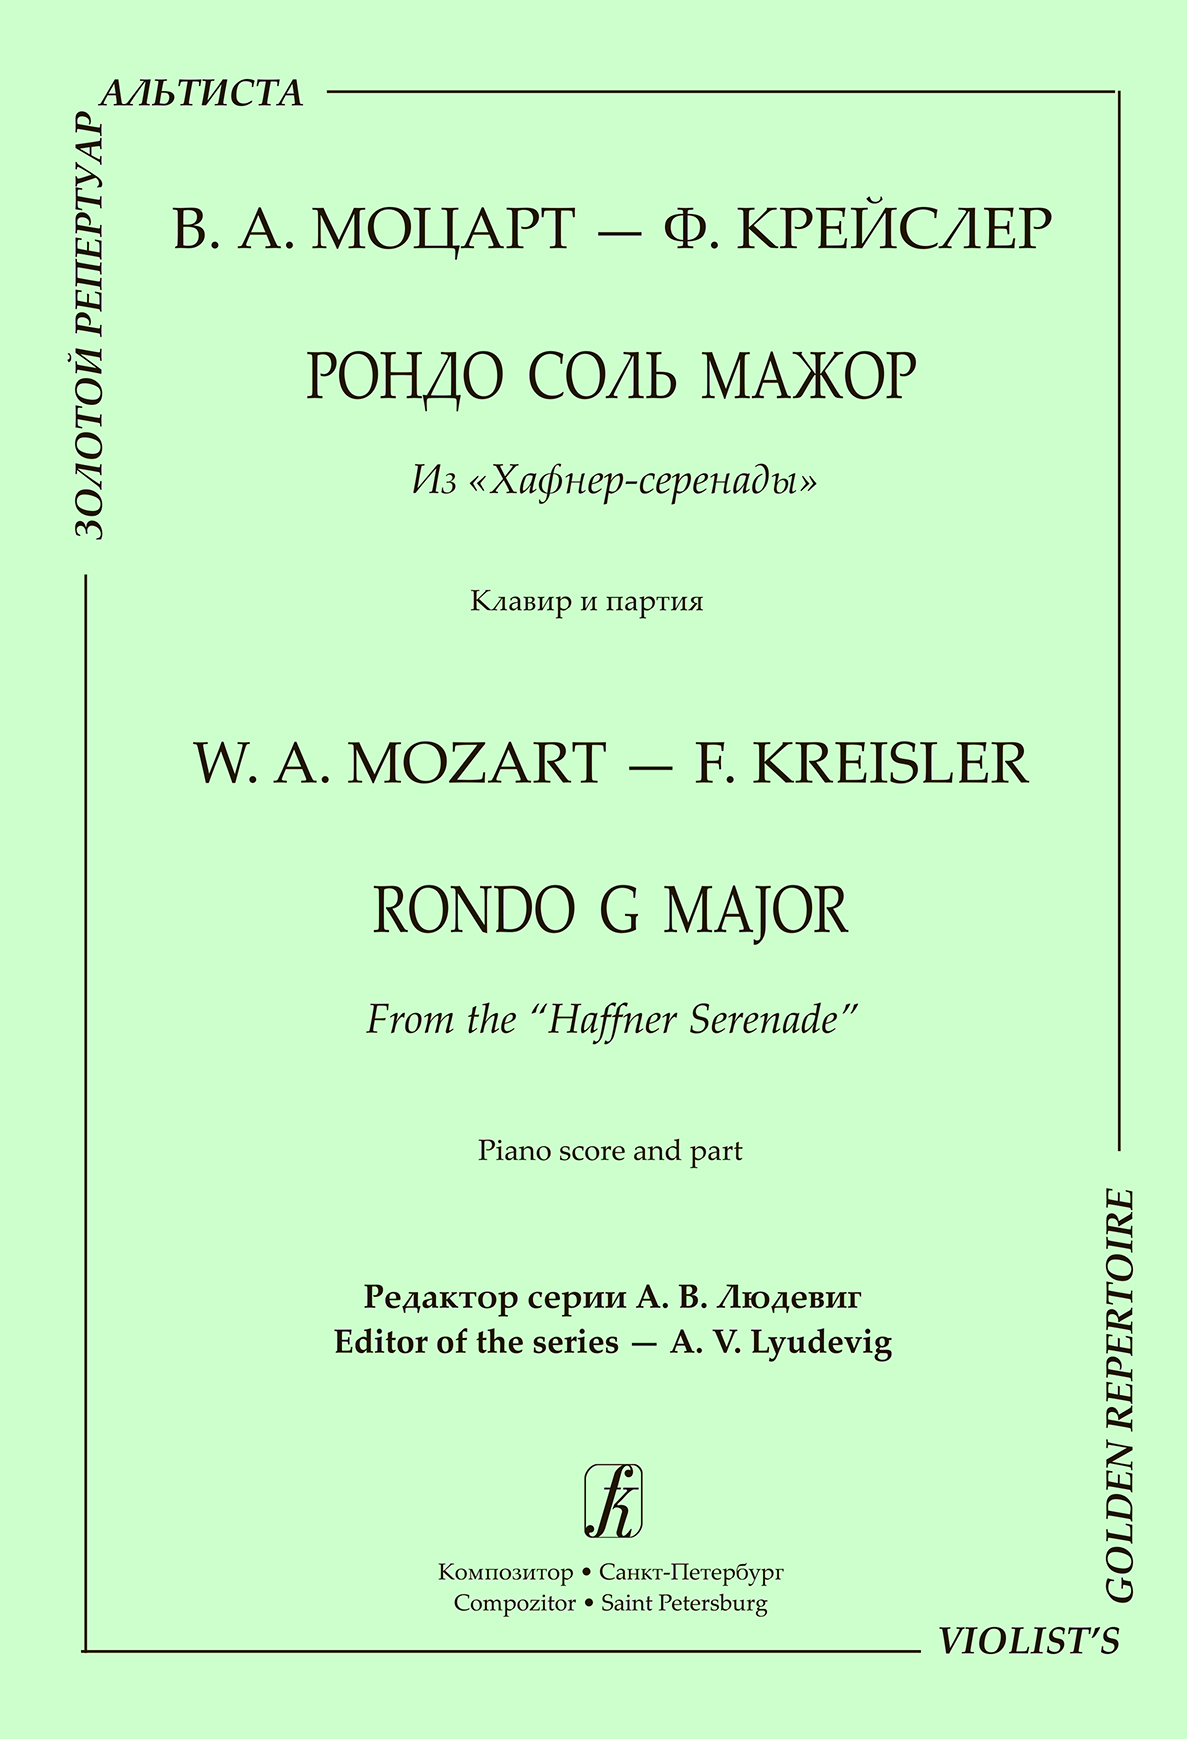 Моцарт В. Рондо соль мажор из «Хафнер-серенады». Клавир и партия